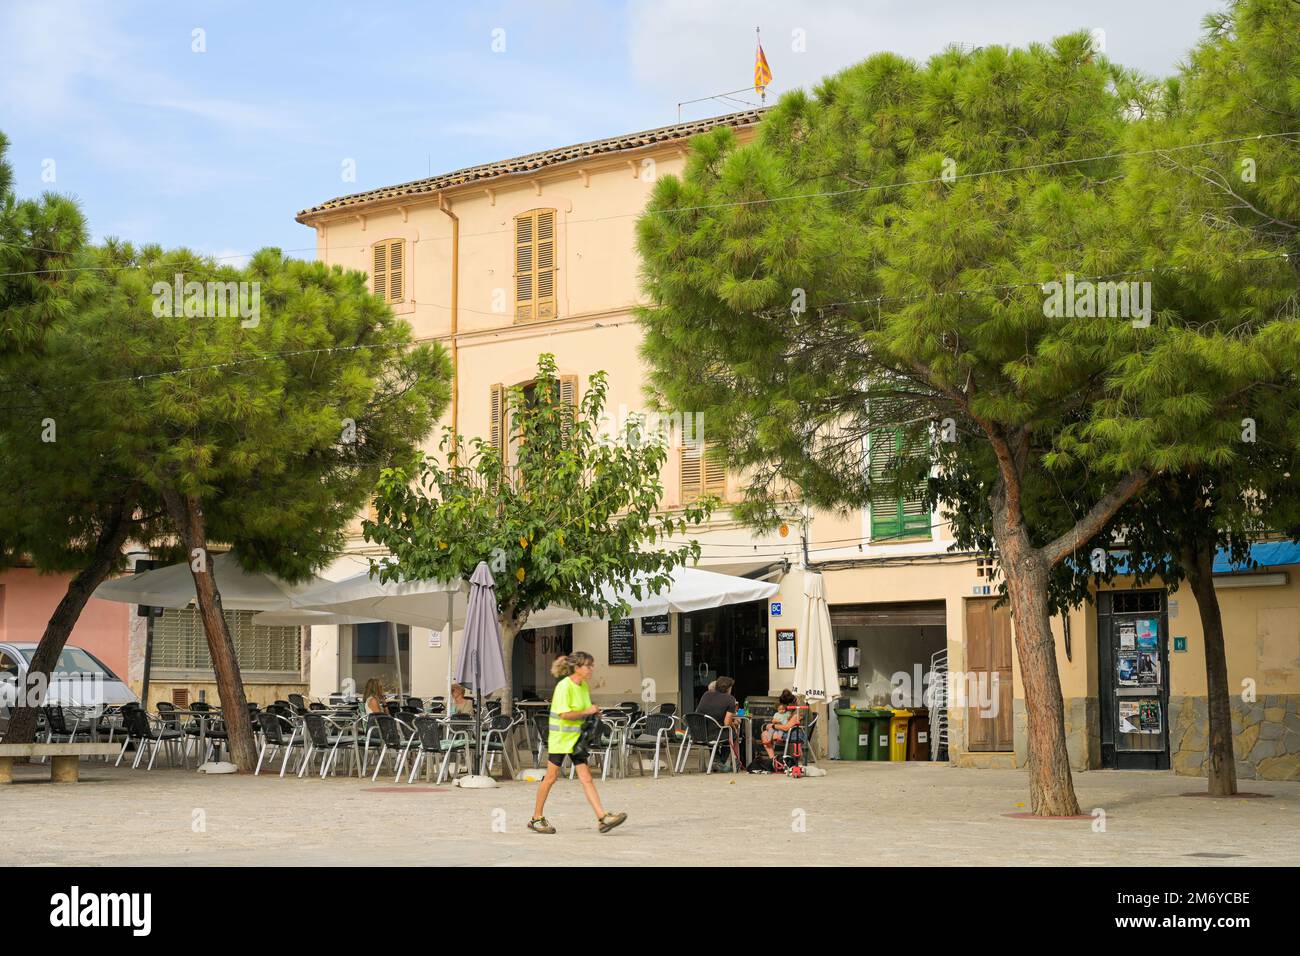 Straßenszene, Marktplatz, Altstadt, Andratx, Mallorca, Spanien Stock Photo